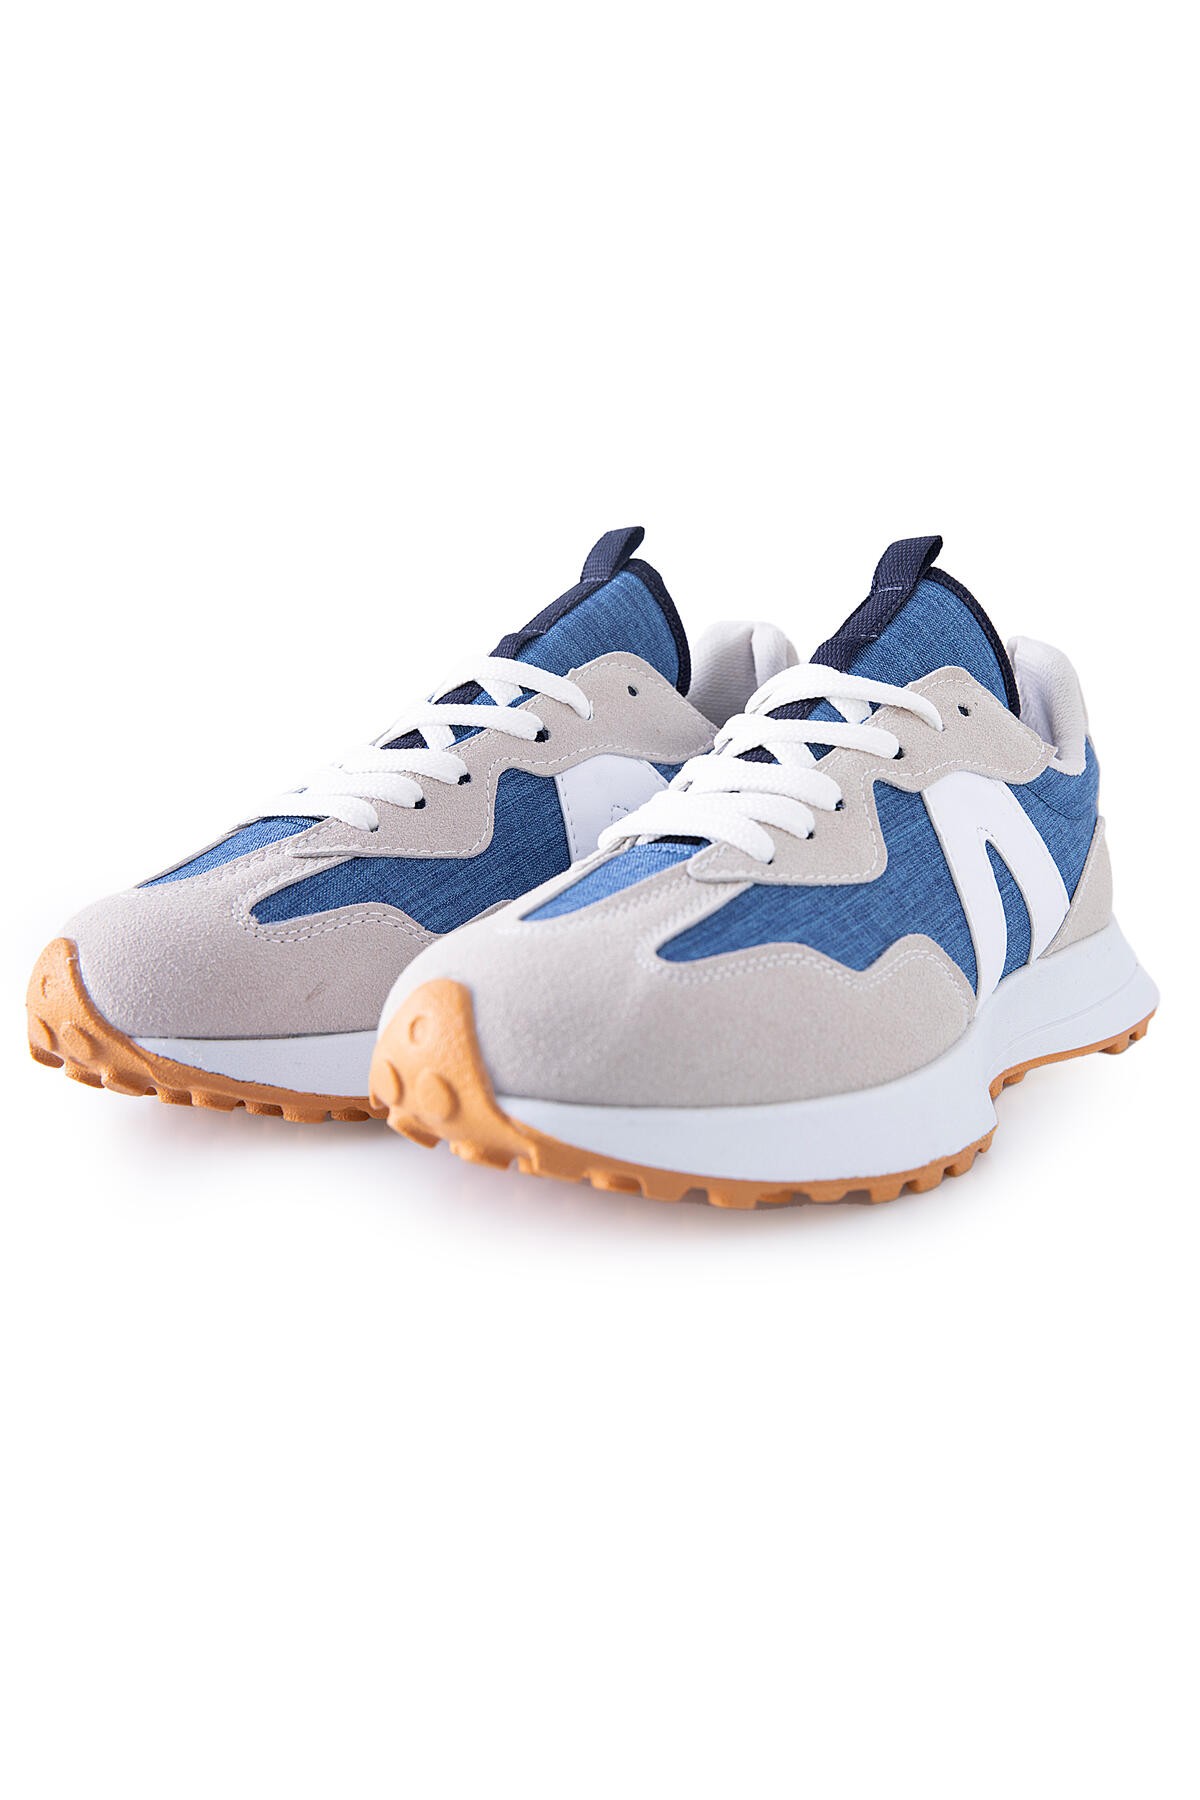 Bej Mantar Topuk Detaylı Bağcıklı Erkek Spor Ayakkabı - 89095